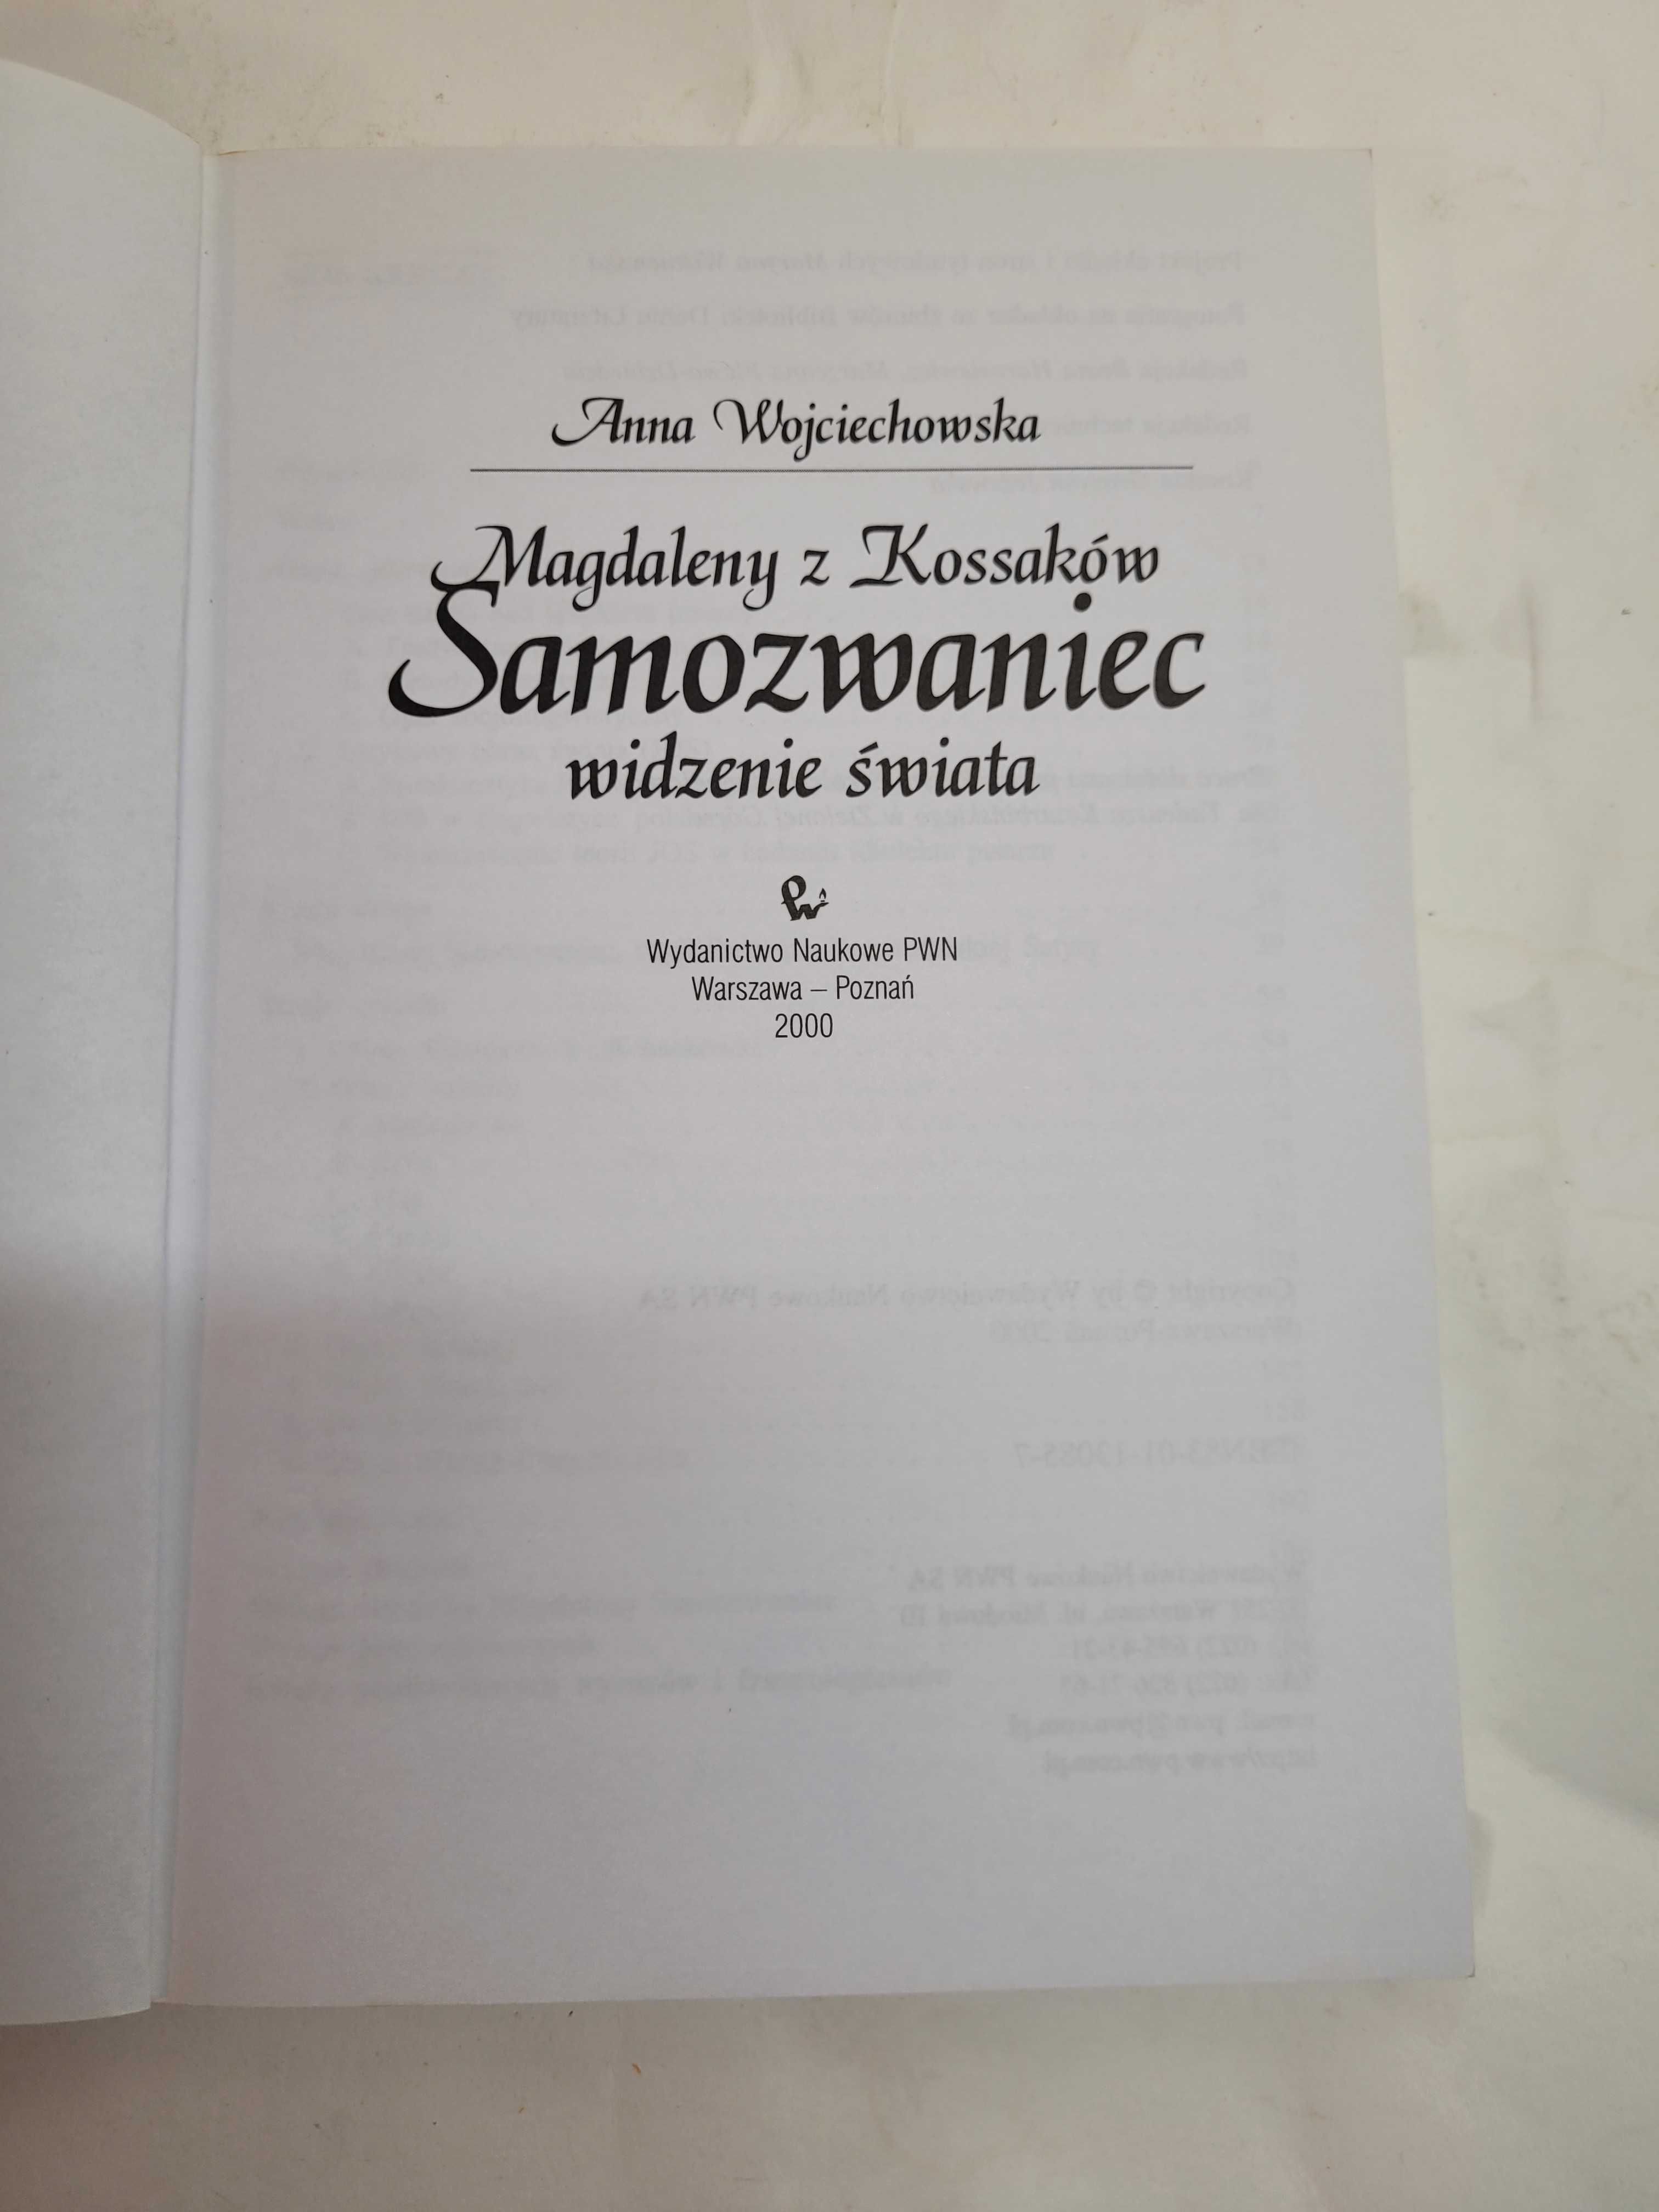 Magdaleny z Kossaków Samozwaniec widzenie świata A, Wojciechowska